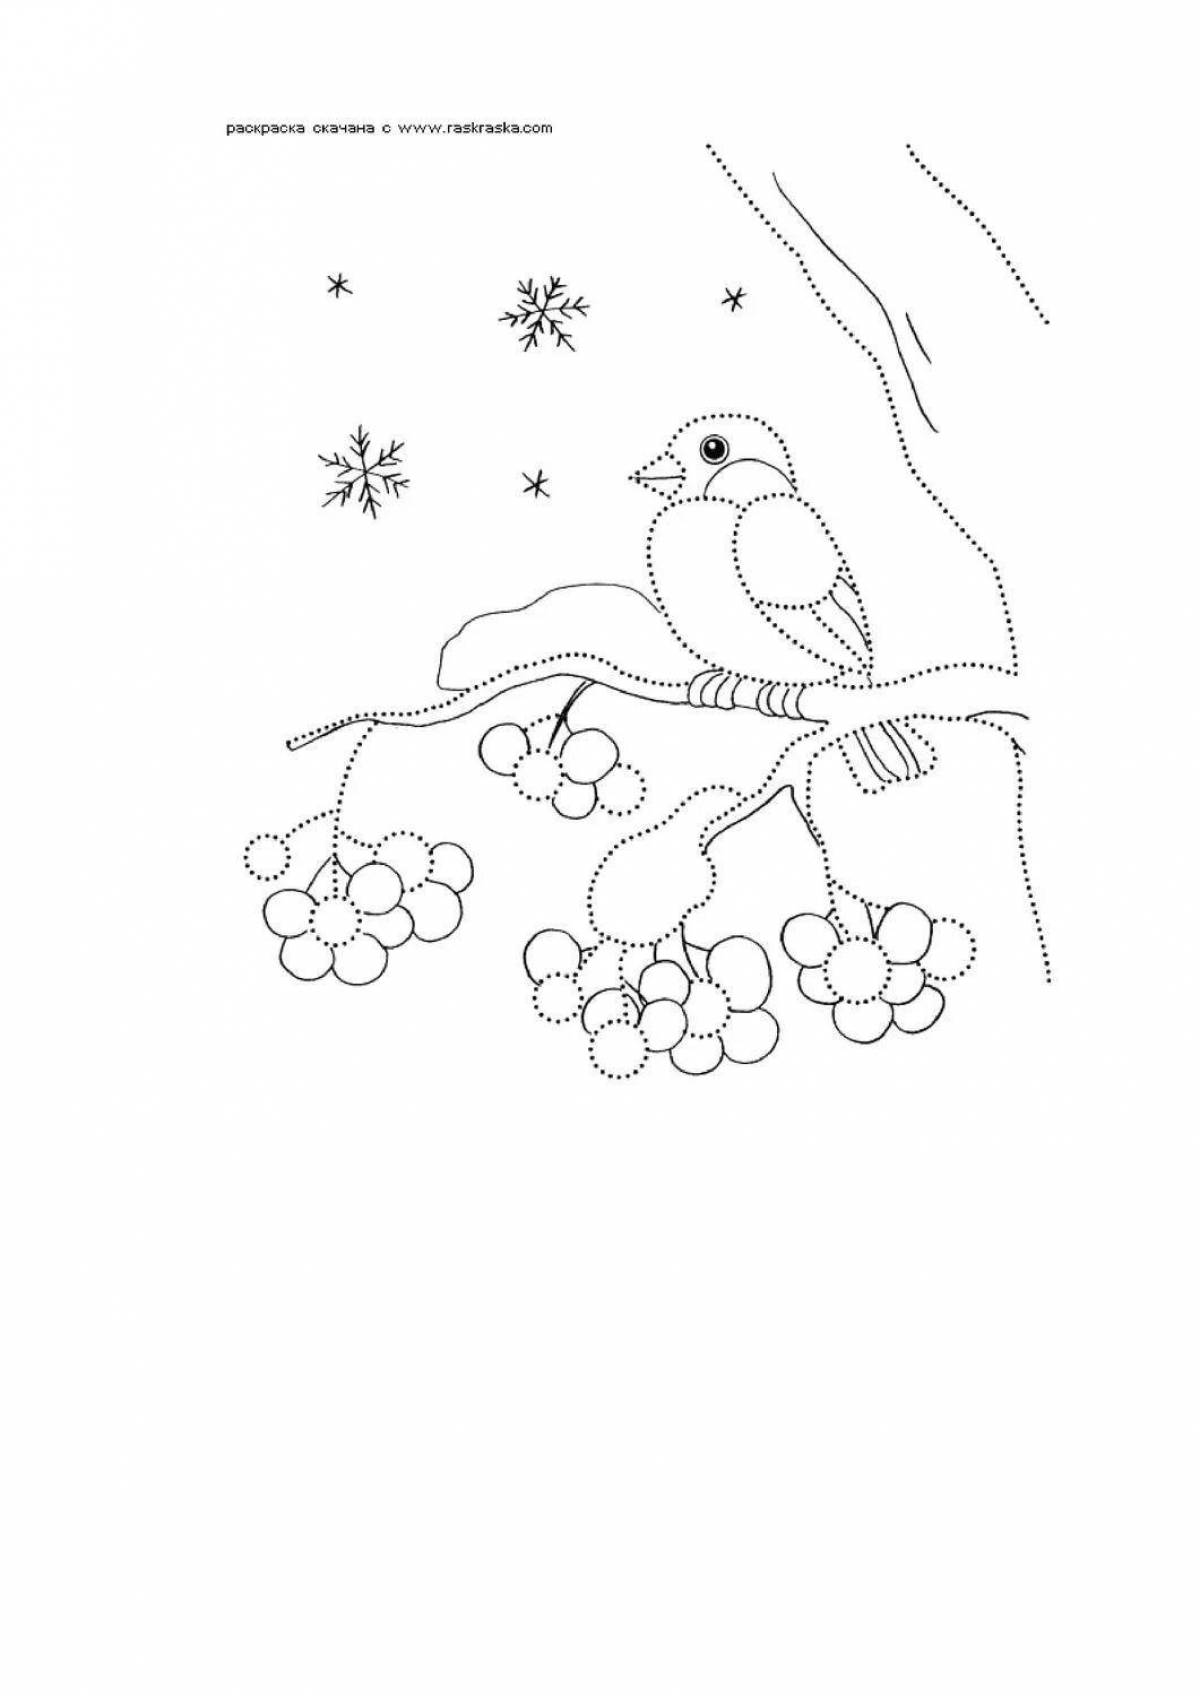 A poignant drawing of a bullfinch on a rowan branch